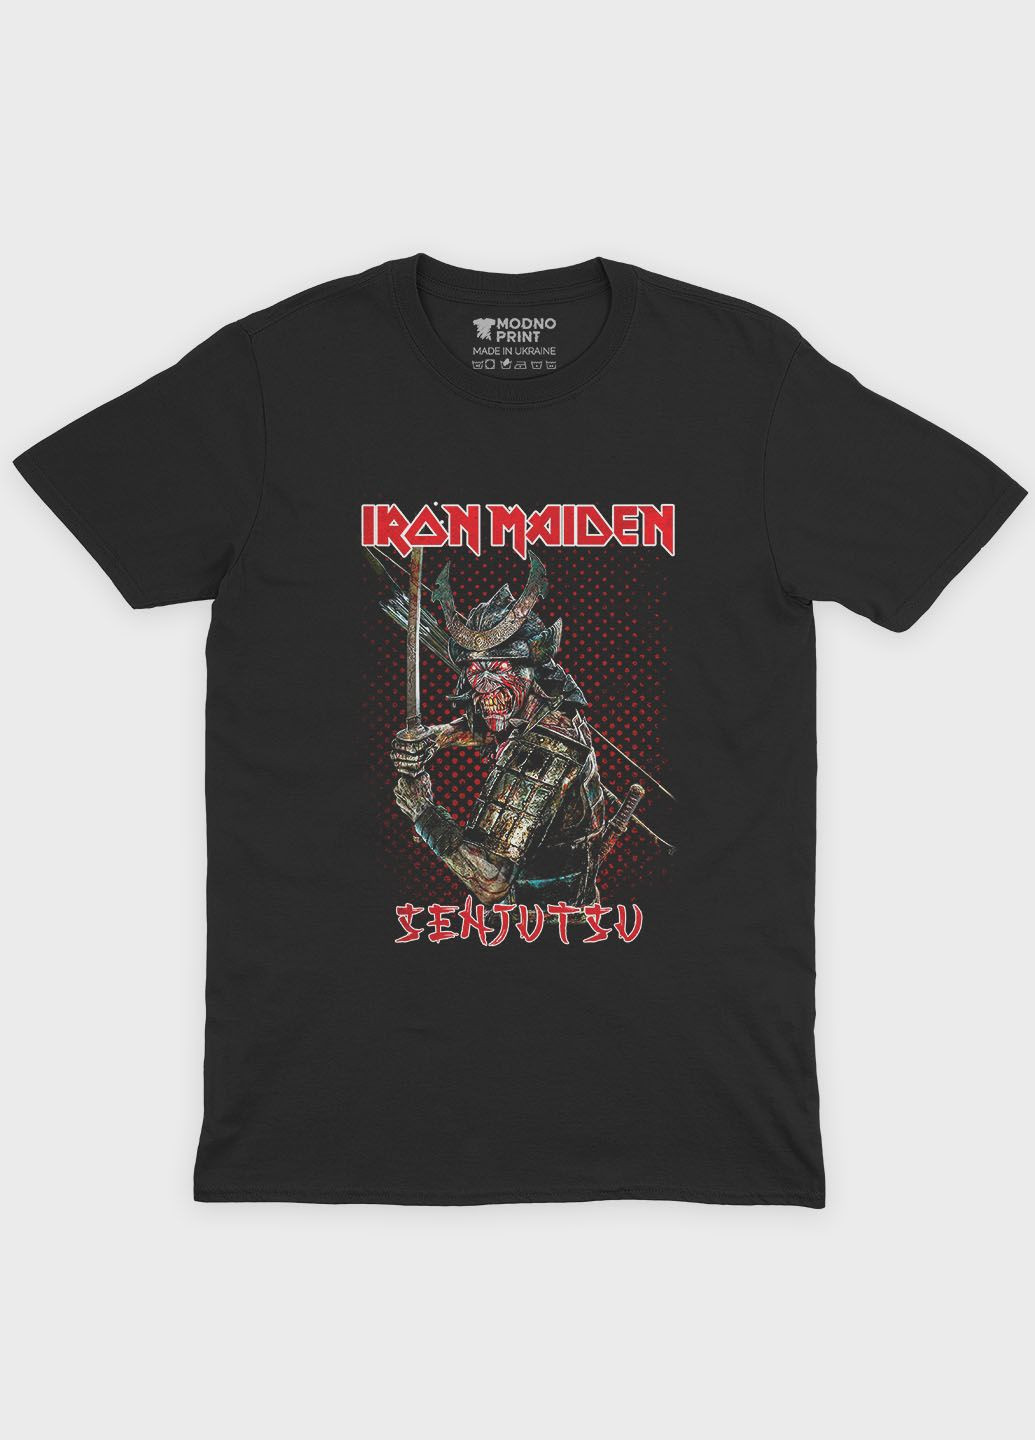 Черная мужская футболка с рок-принтом "iron maiden" (ts001-1-bl-004-2-132) Modno